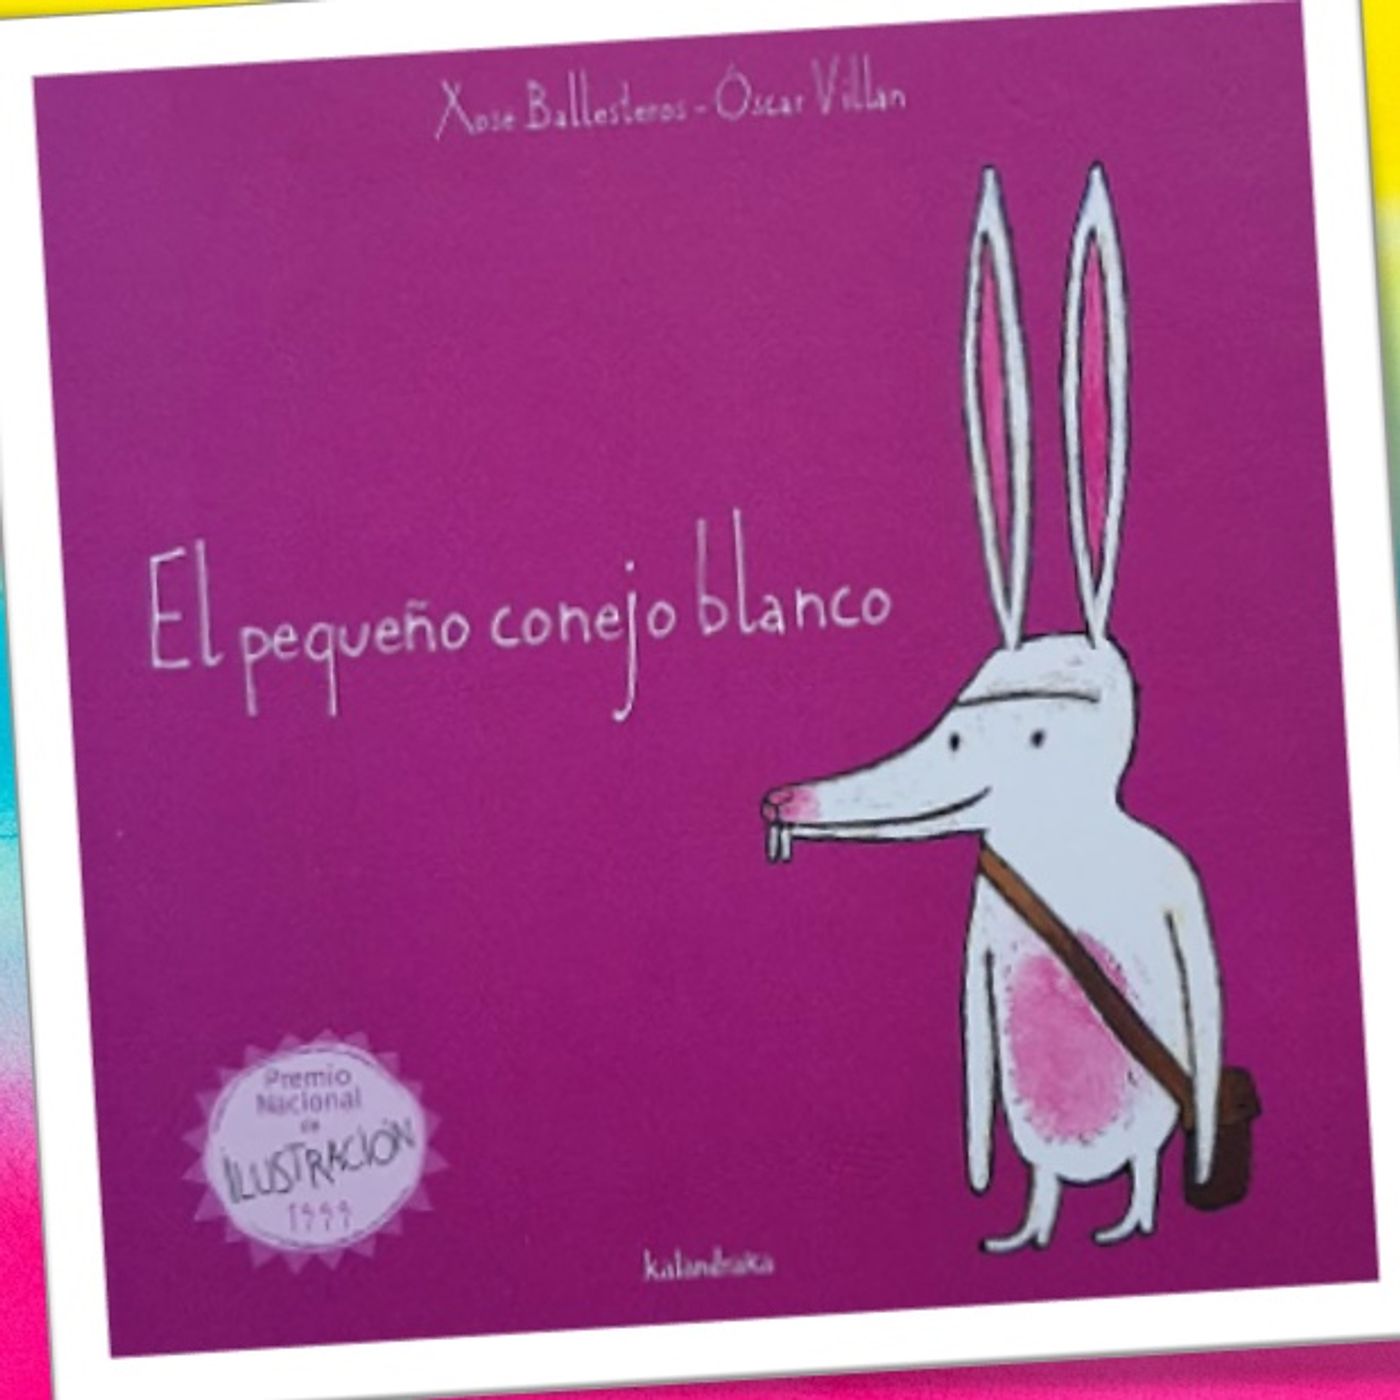 Pequeño conejo blanco, cuento infantil de Xosé Ballesteros y Oscar Villán. Editorial Kalandraka